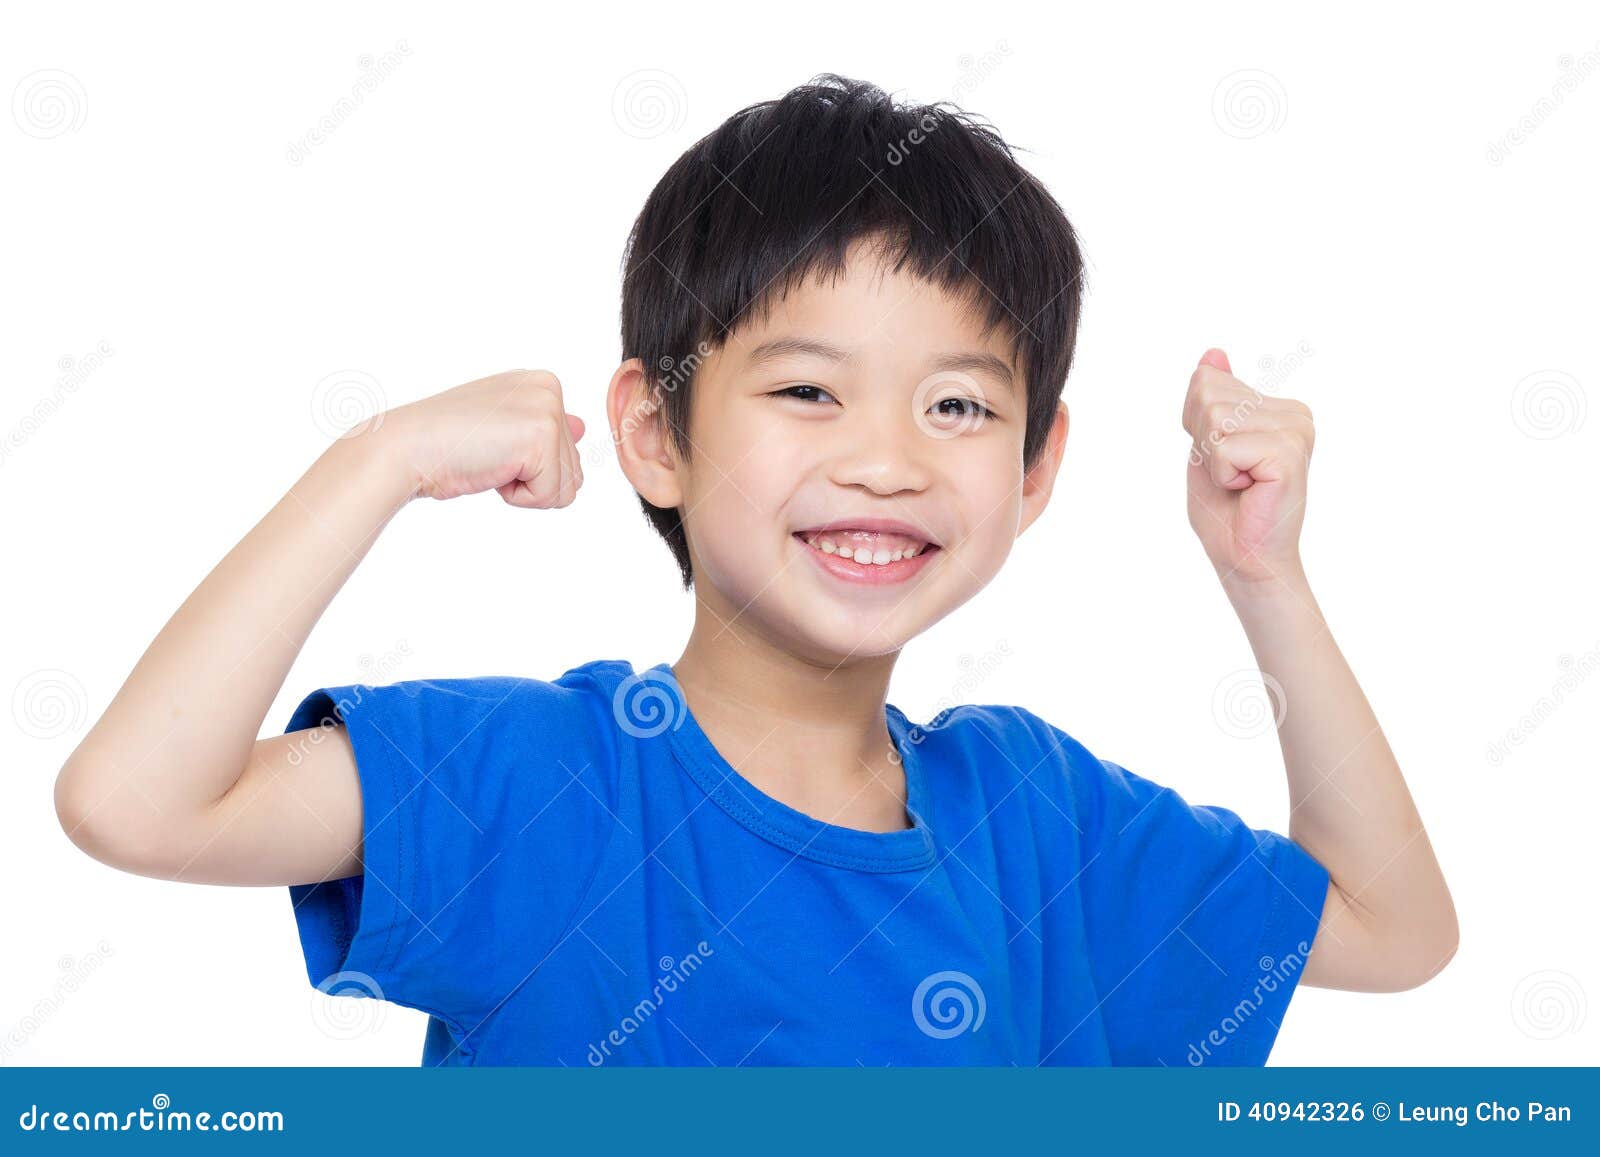 asia little boy flexing biceps